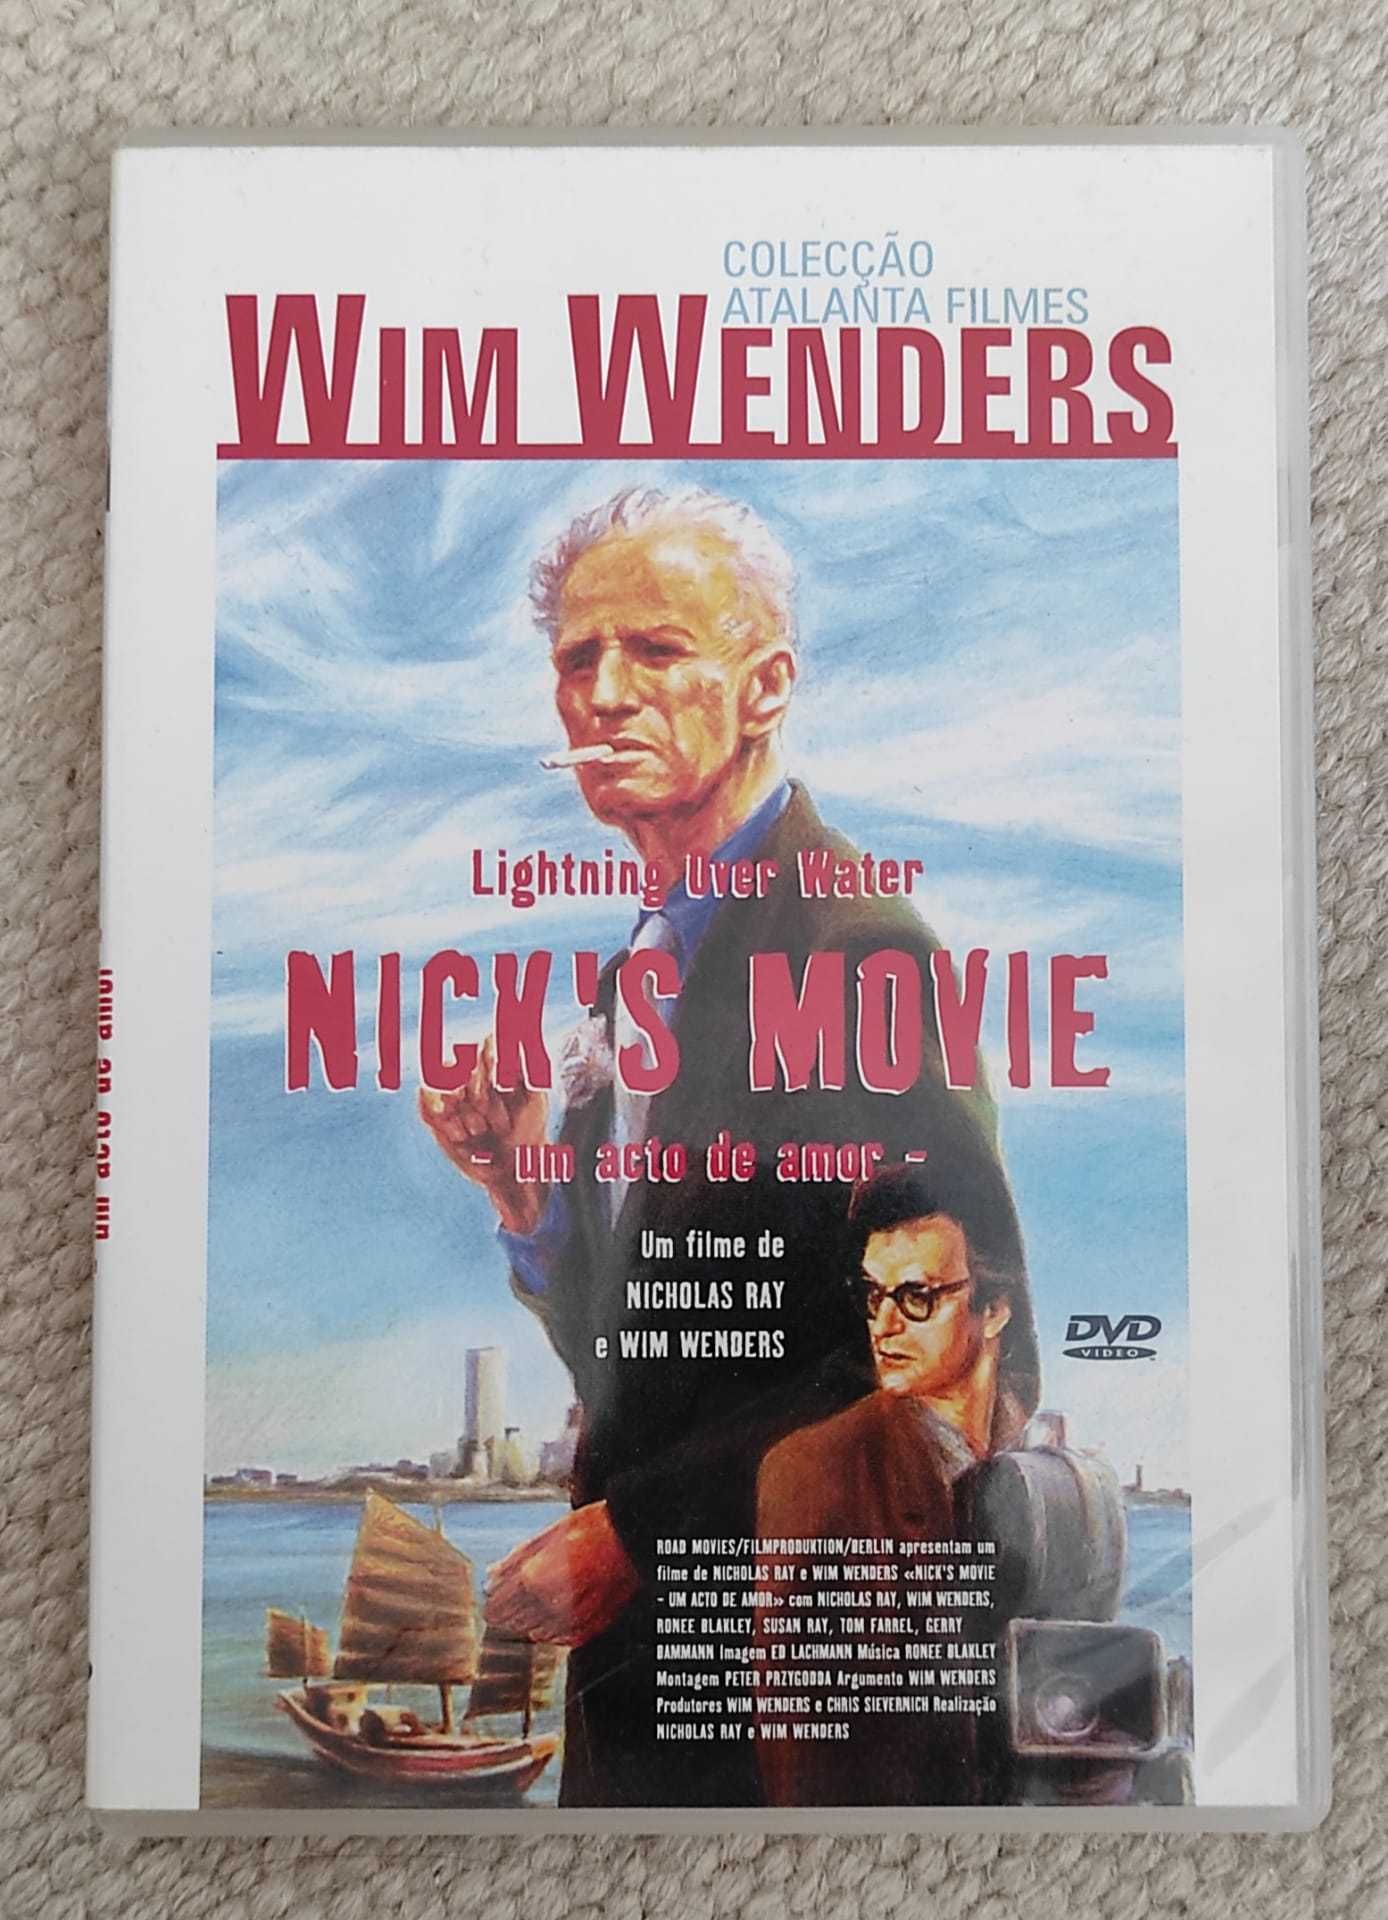 DVD “Nick's movie - Um acto de amor”, de Nicholas Ray e Wim Wenders